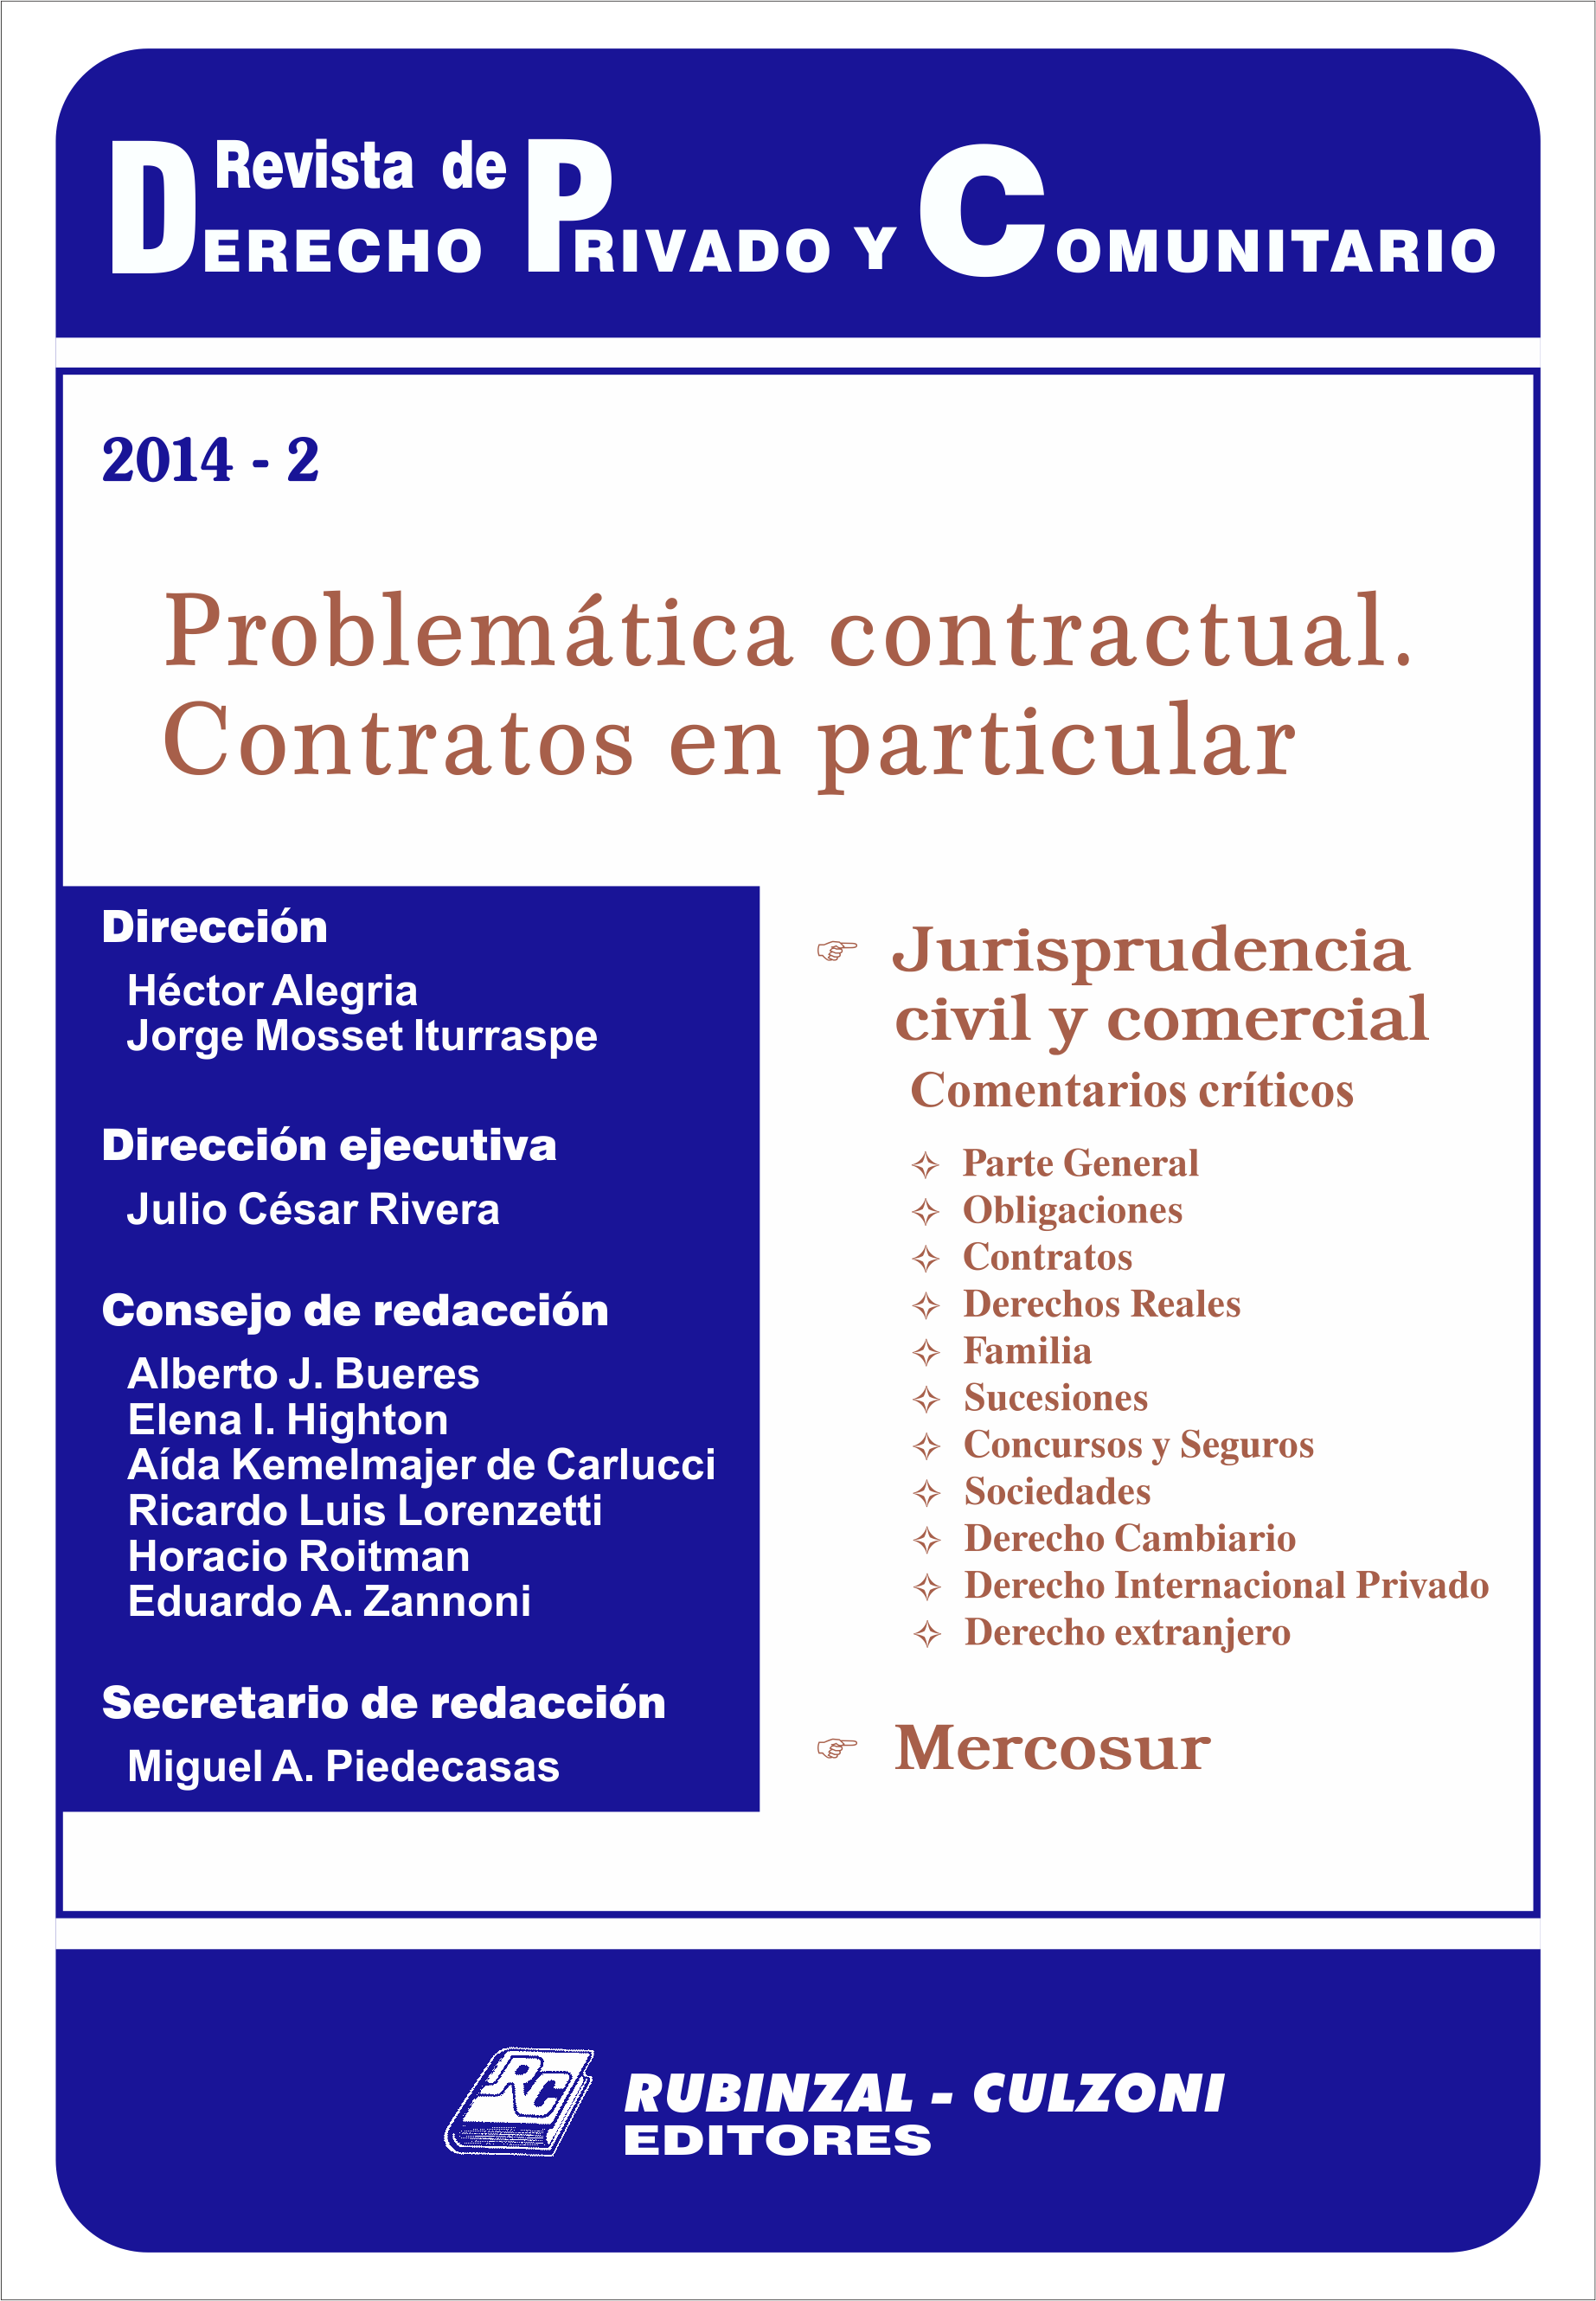 Revista de Derecho Privado y Comunitario - Problemática contractual. Contratos en particular